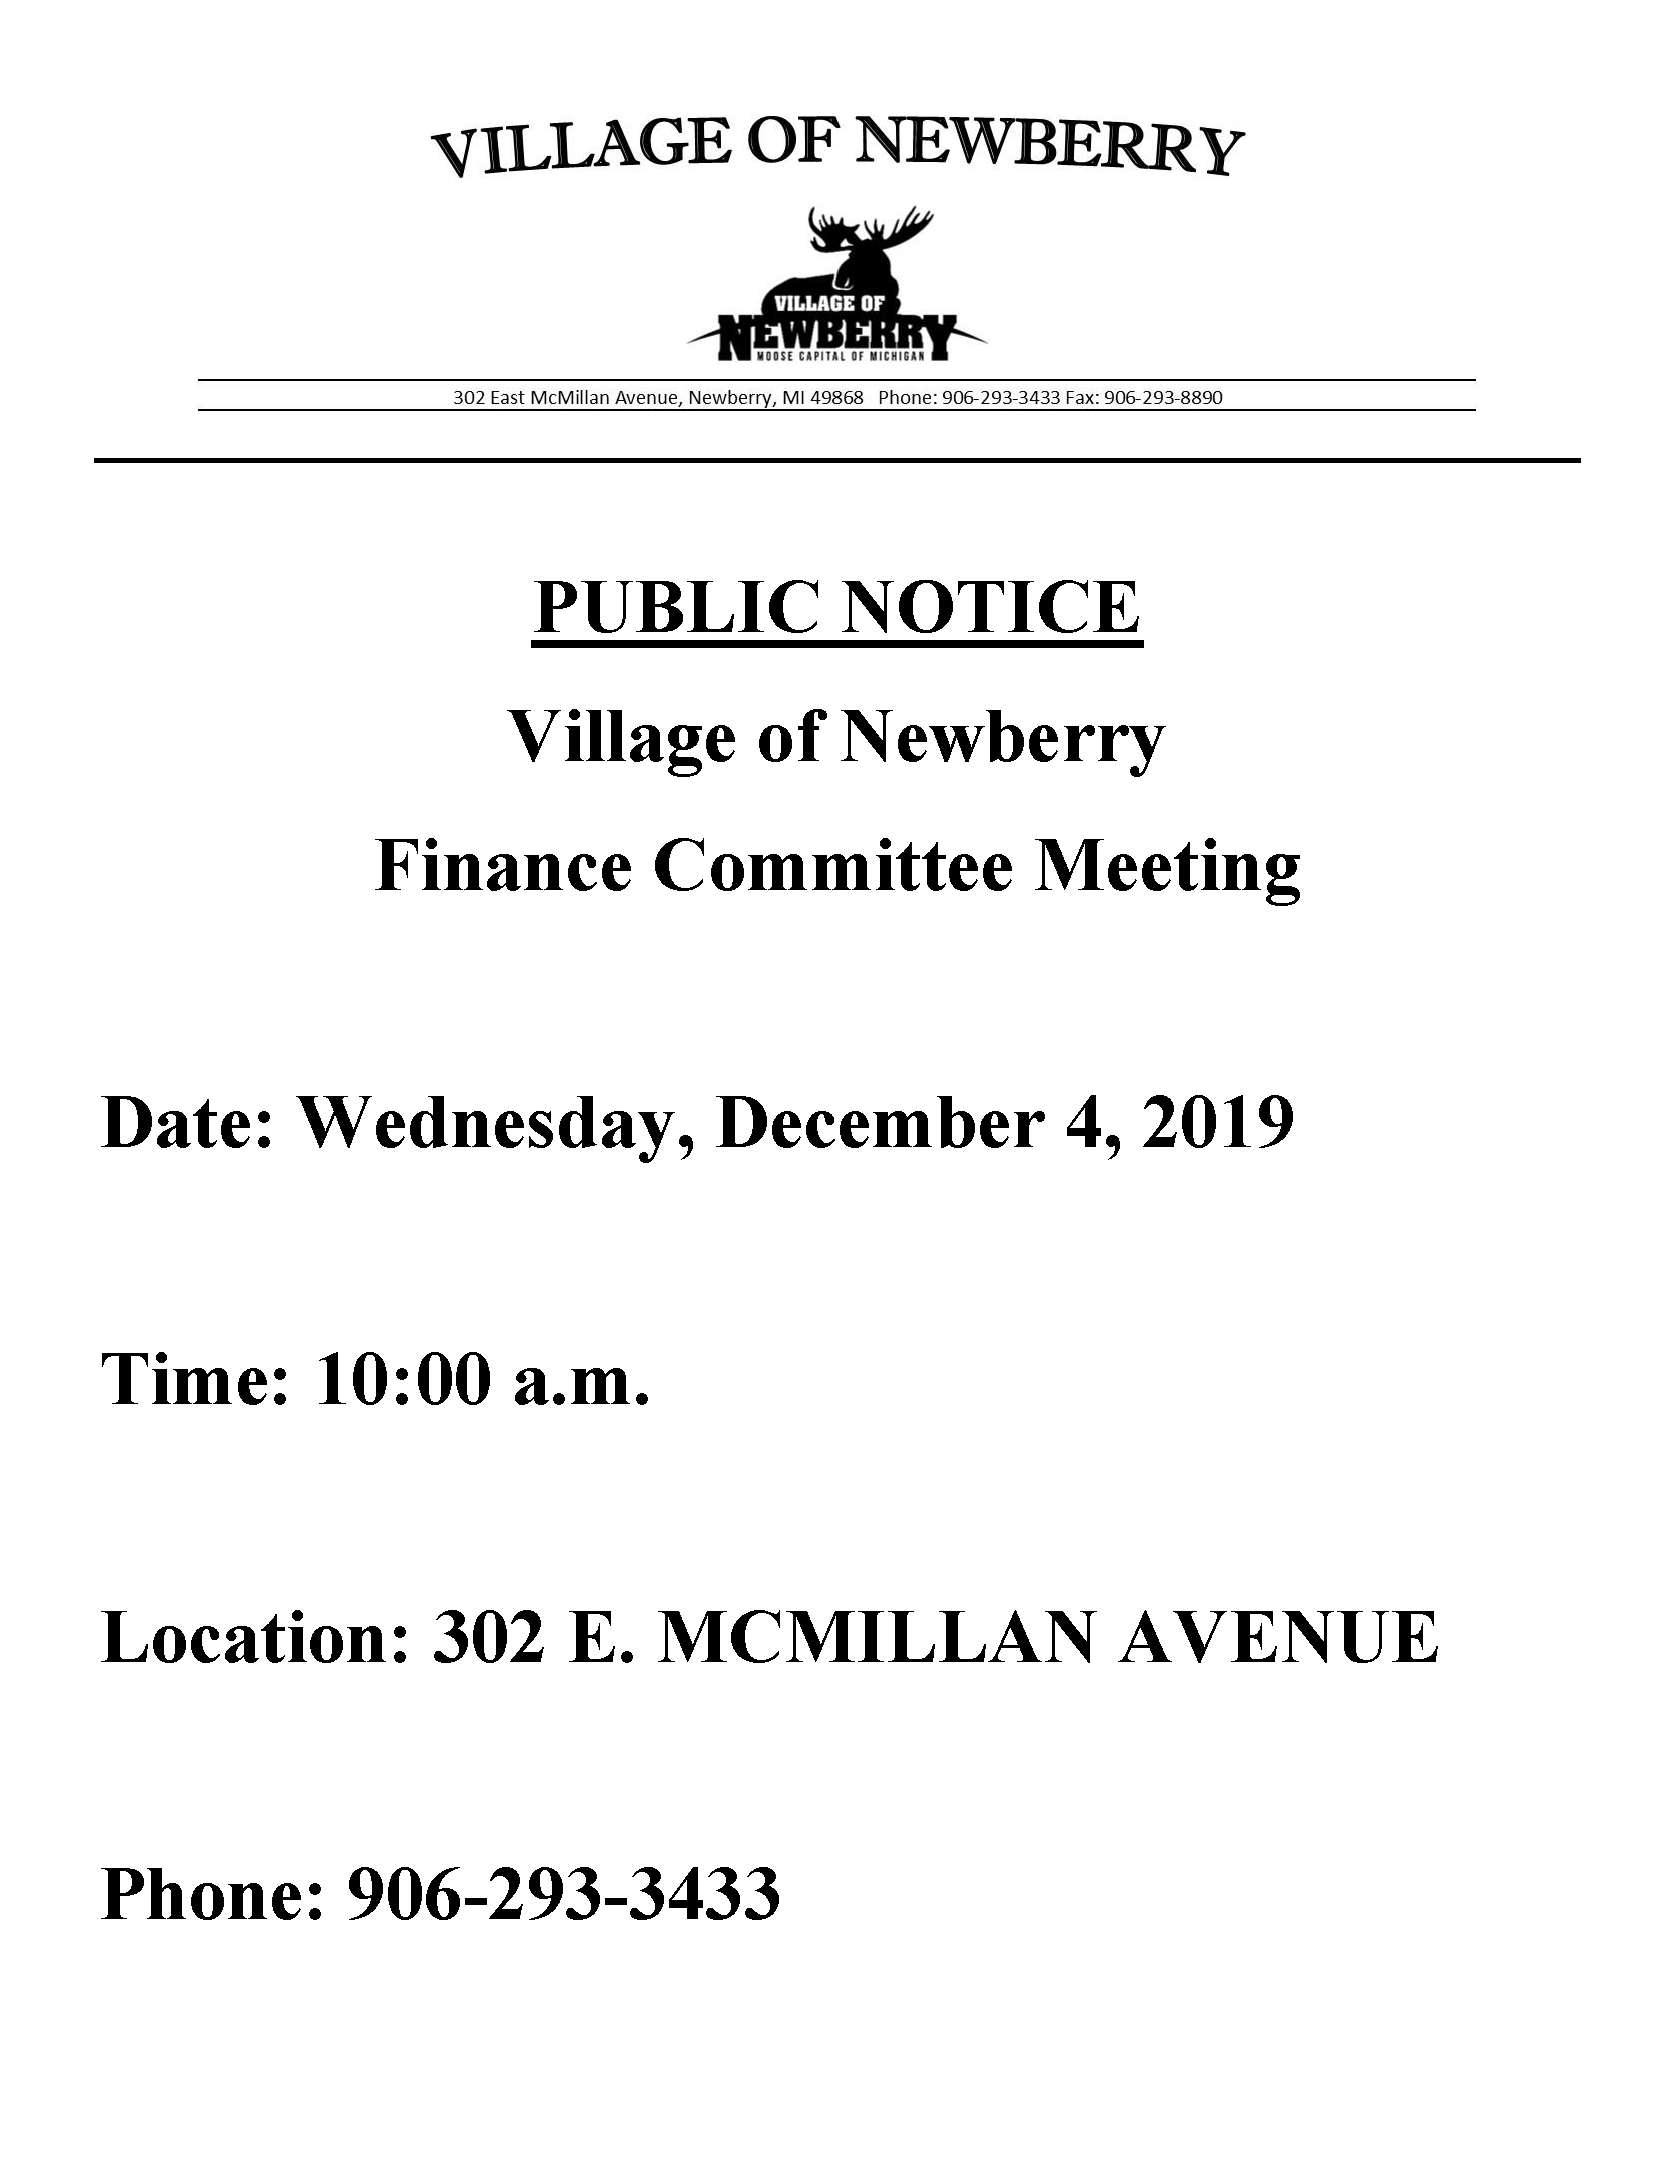 Finance_Committee_Meeting_12-4-19_posting